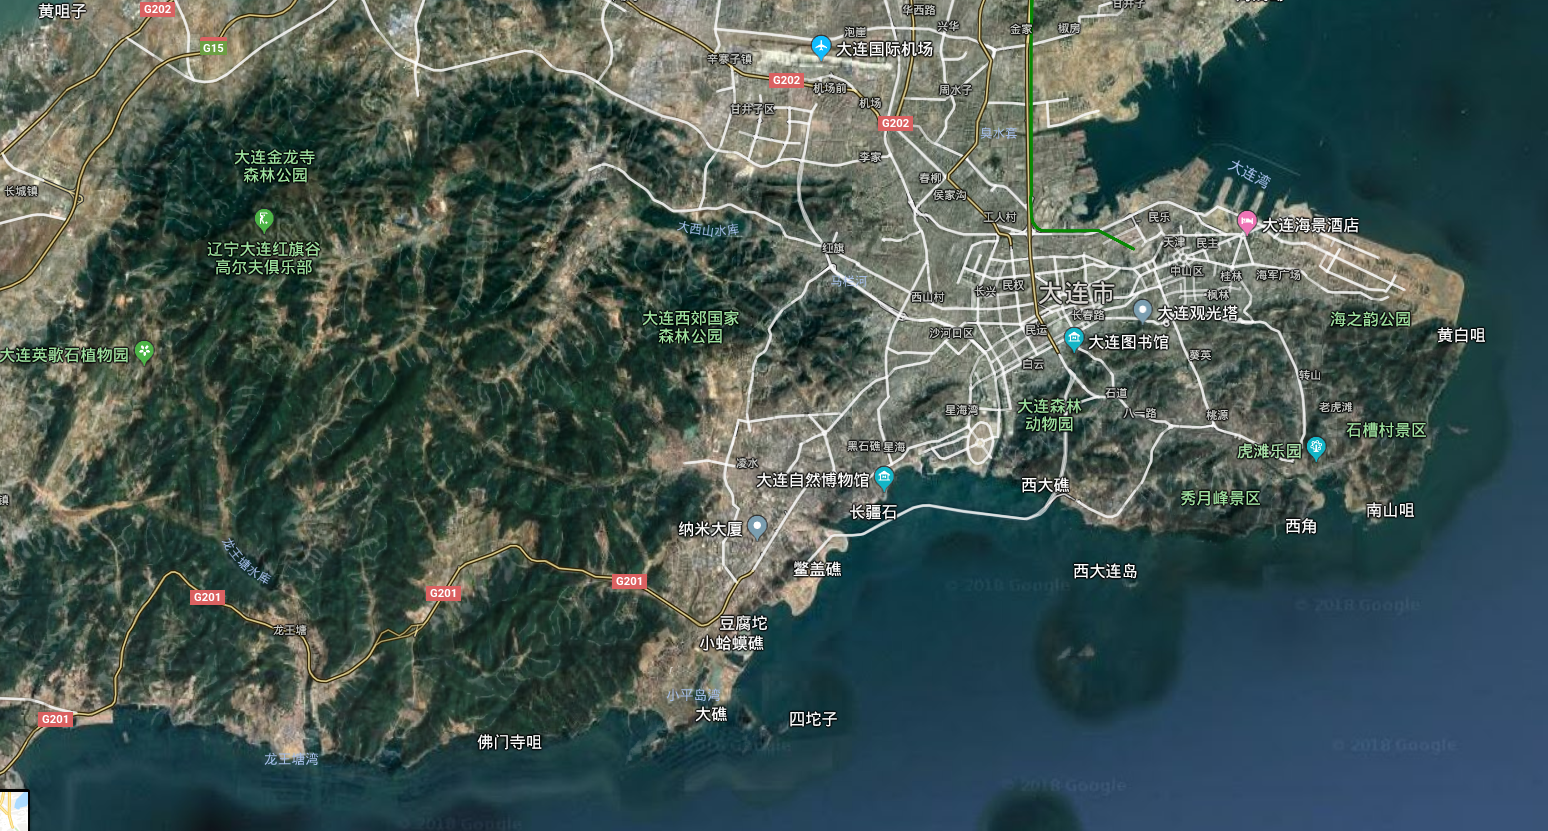 大连市的卫星图像,来自谷歌地图,可以看出其地形特点.